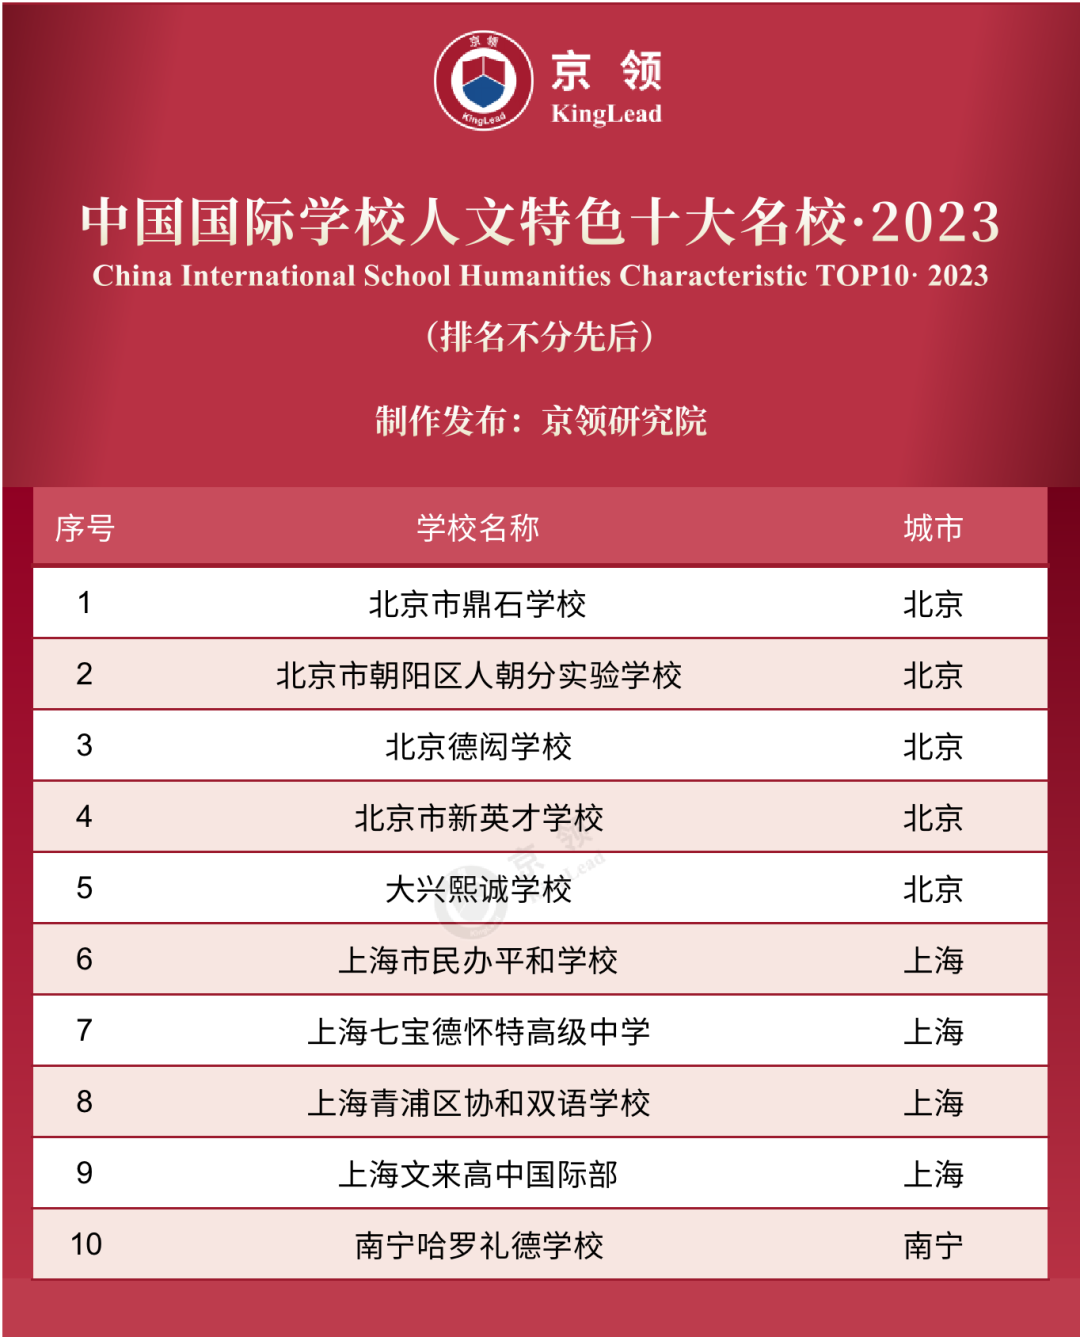 京领2023中国国际学校特色榜发布 英美方向国际学校哪家强  数据 第6张